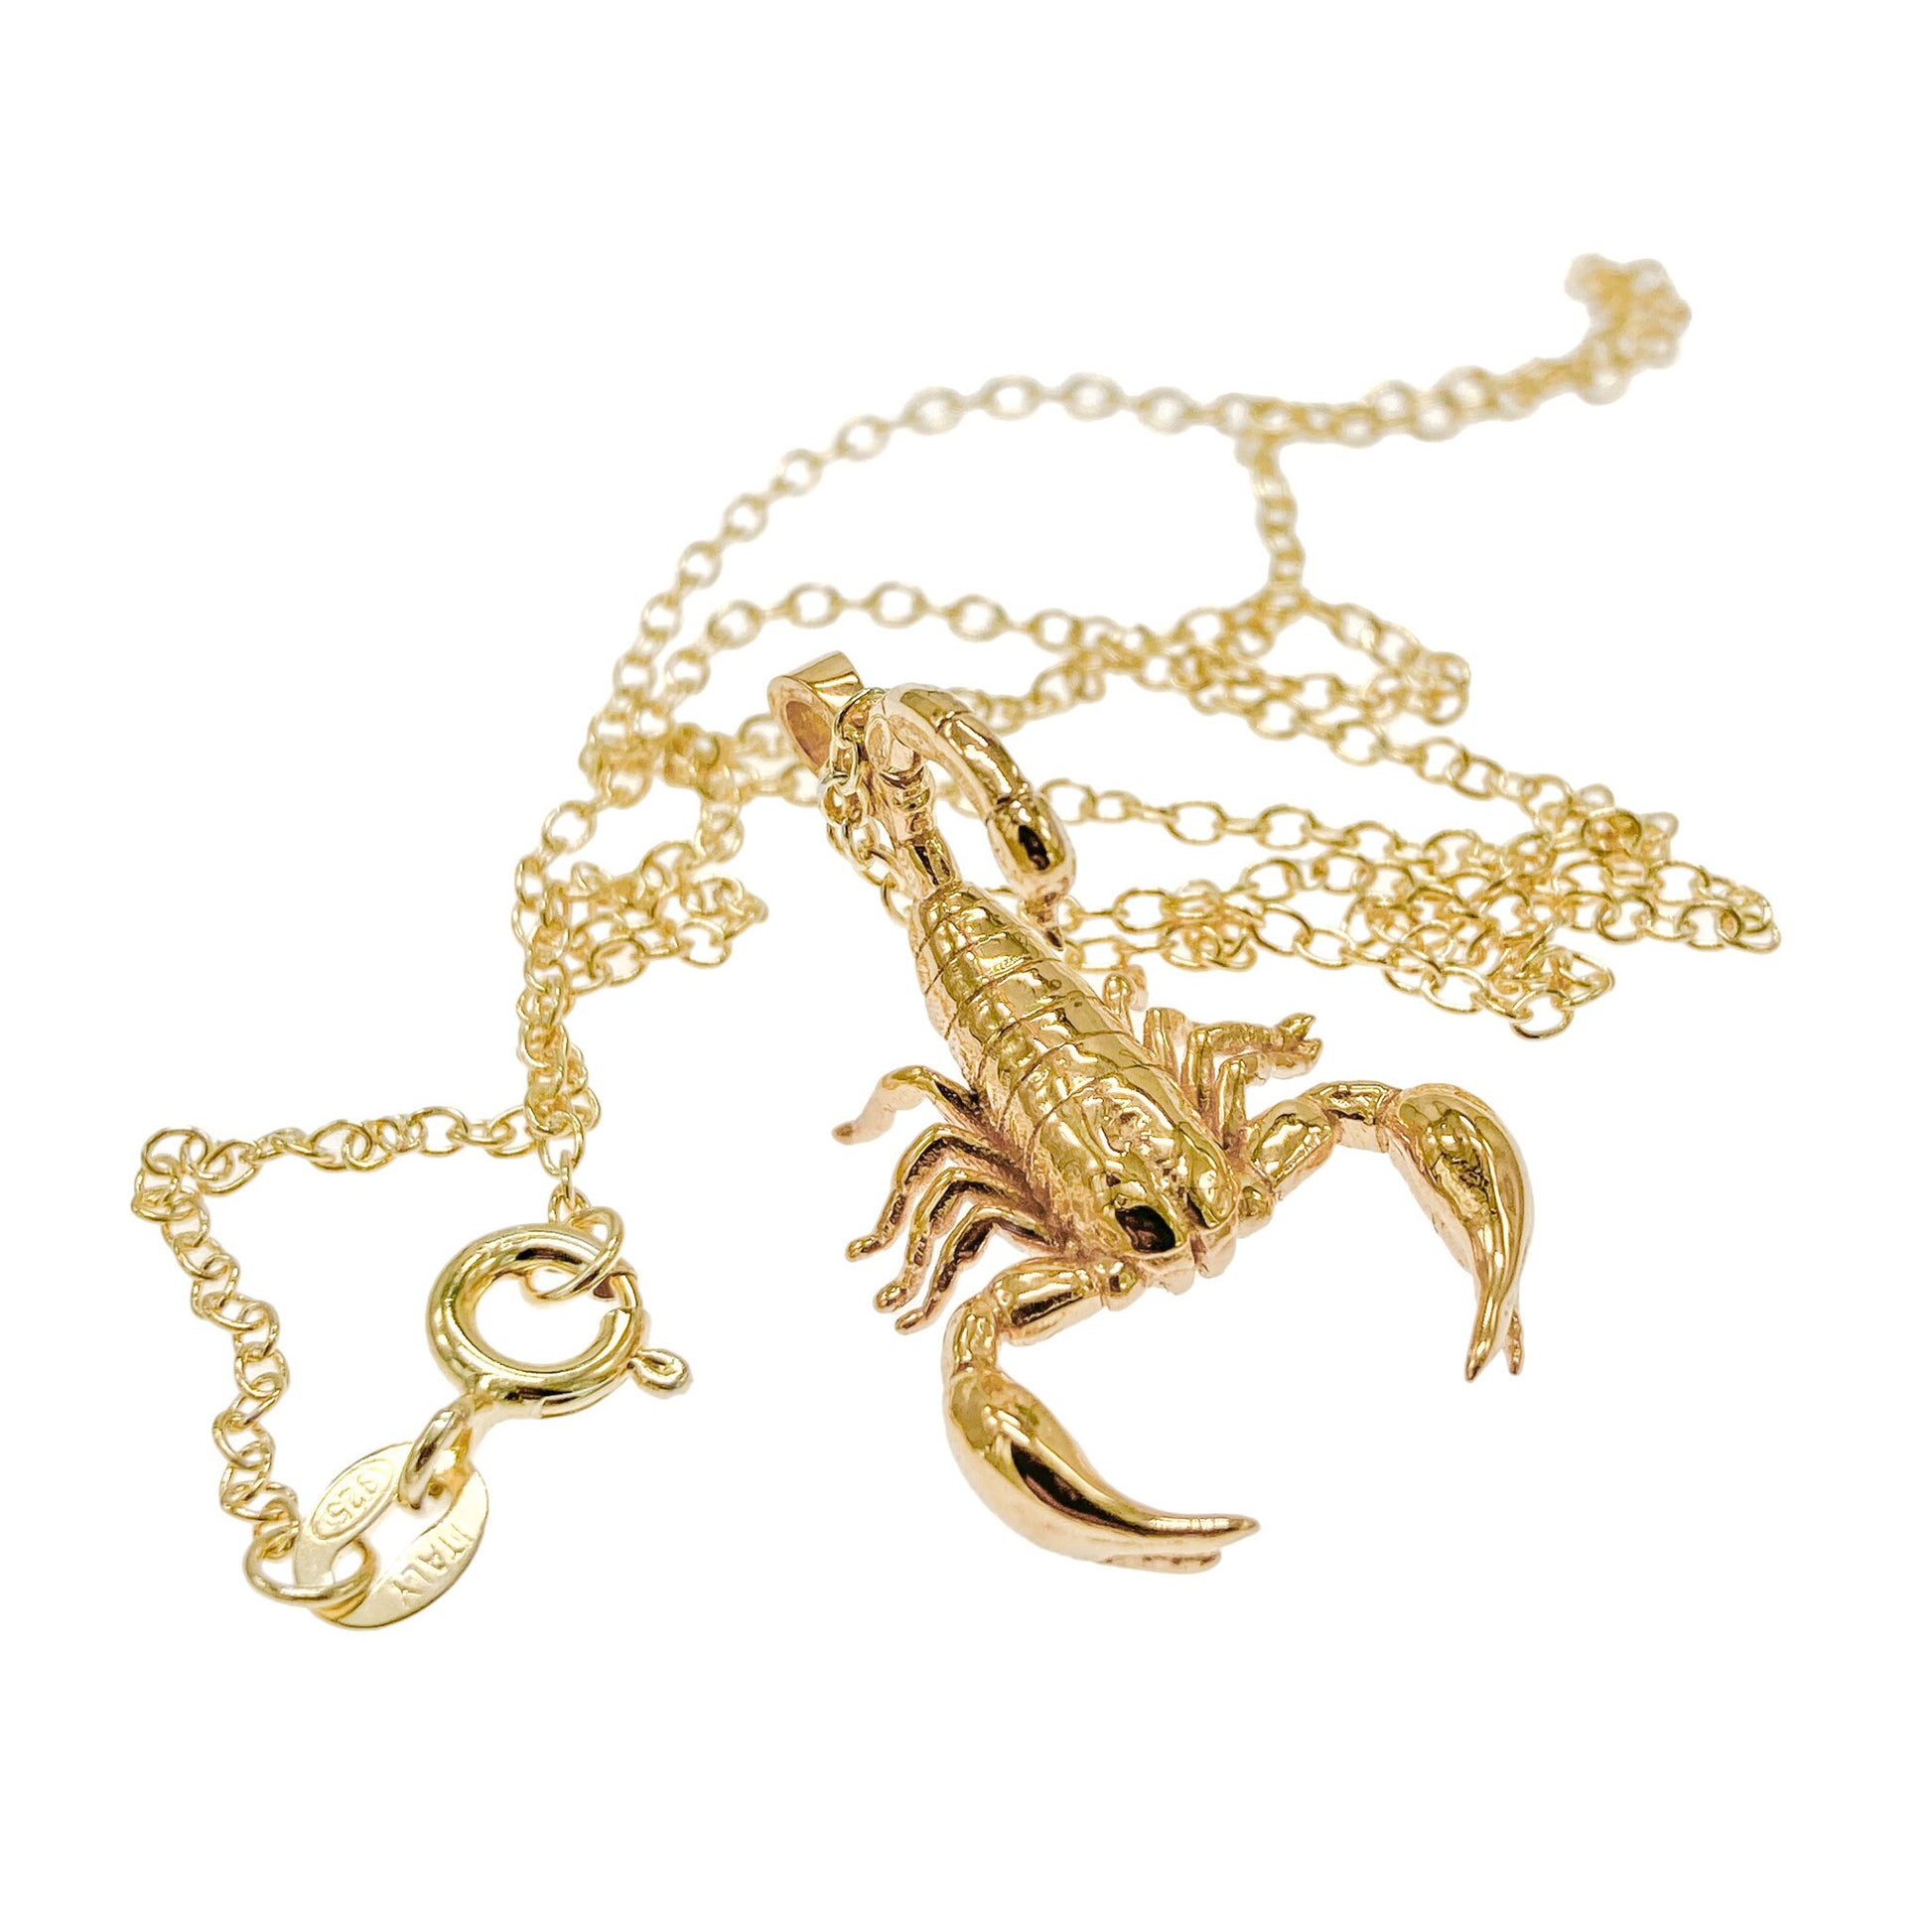 Scorpion Necklace – Jewelry Ray Amelia